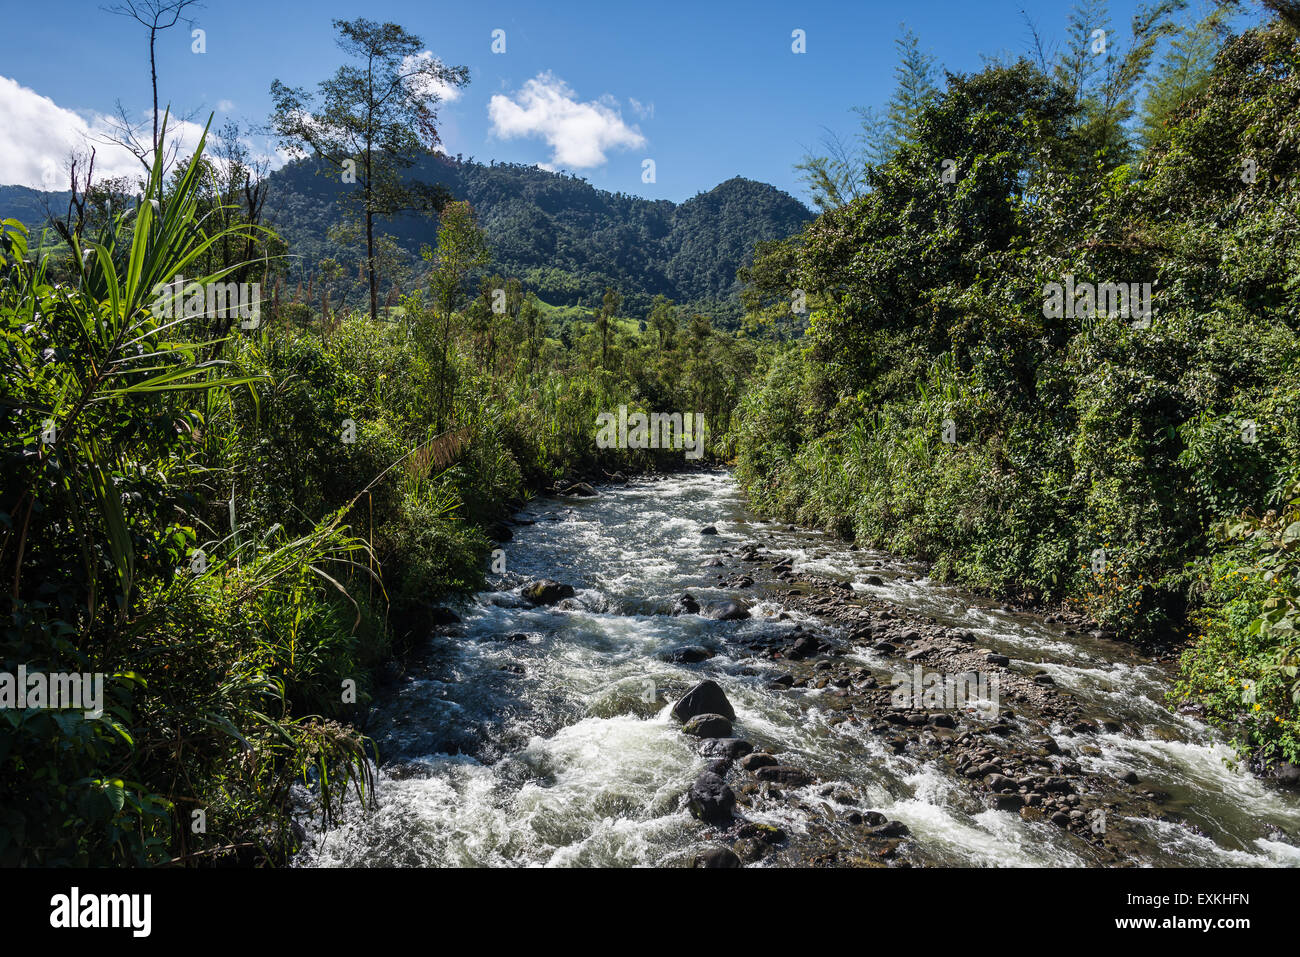 Rio Mindo runs through lush green forest. Mindo, Ecuador. Stock Photo